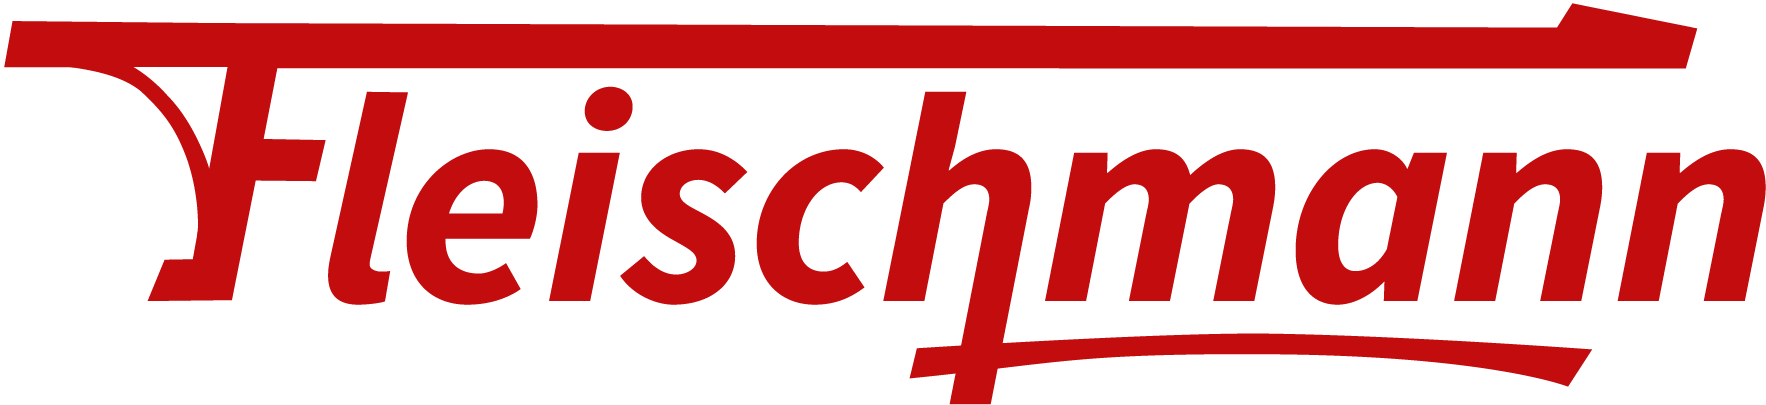 Logo Fleischmann